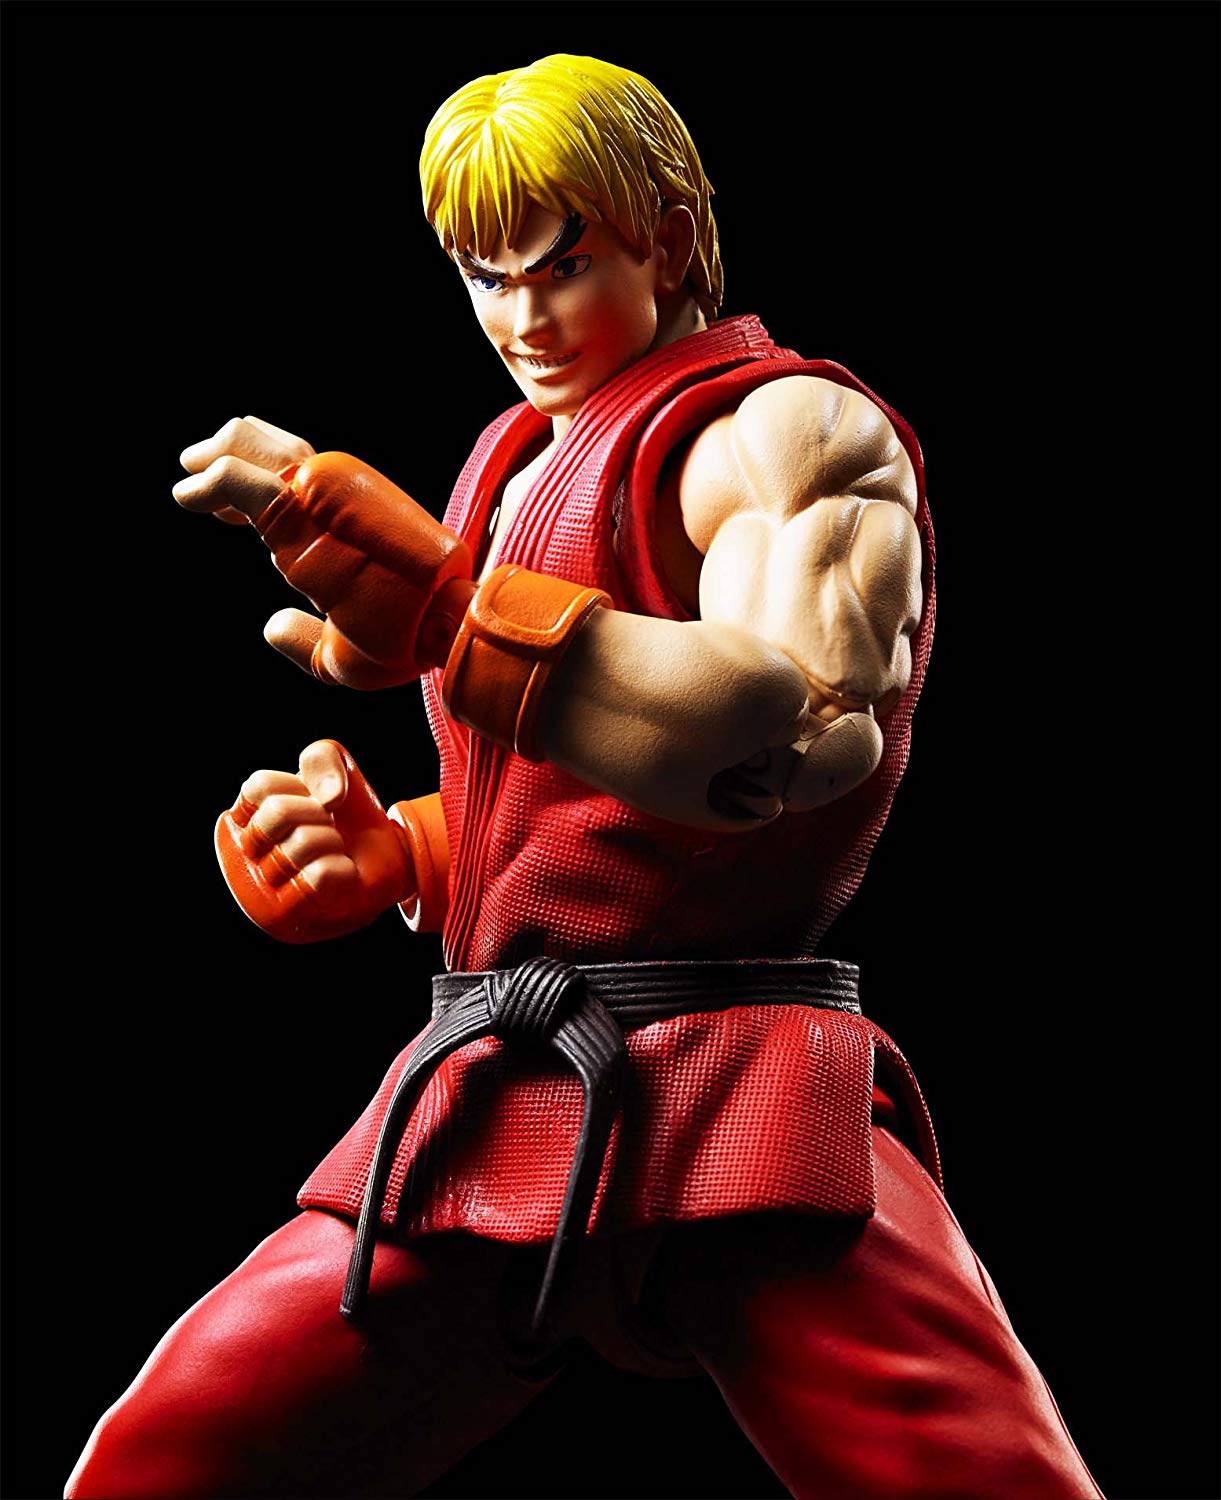 Figura de Ken Masters Street Fighter solo 25€